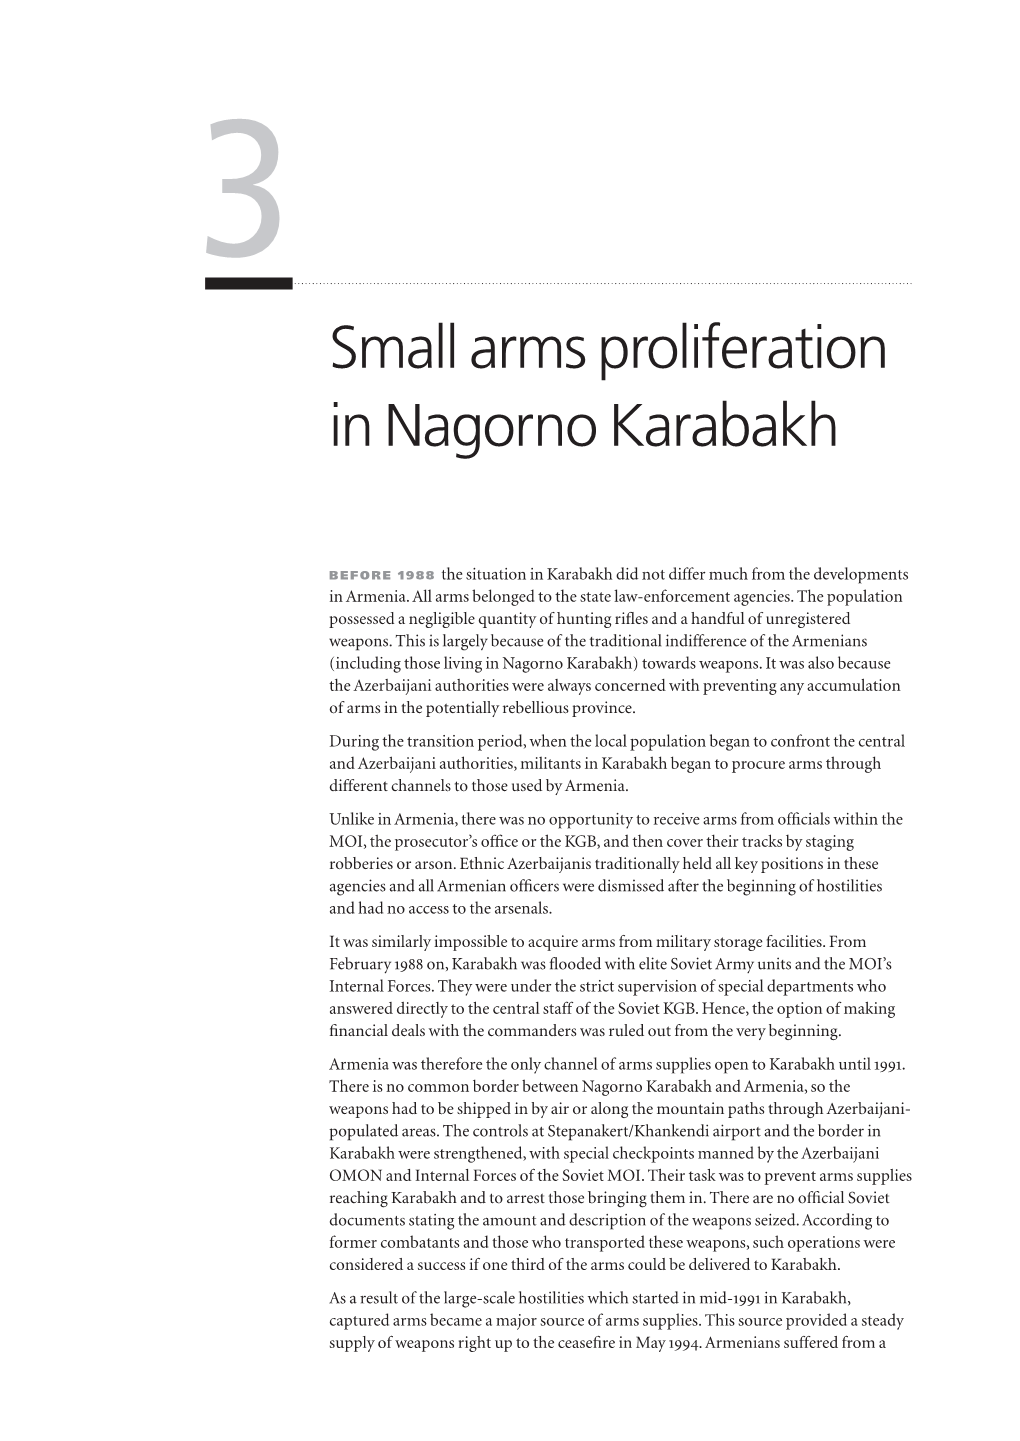 3 Small Arms Proliferation in Nagorno Karabakh